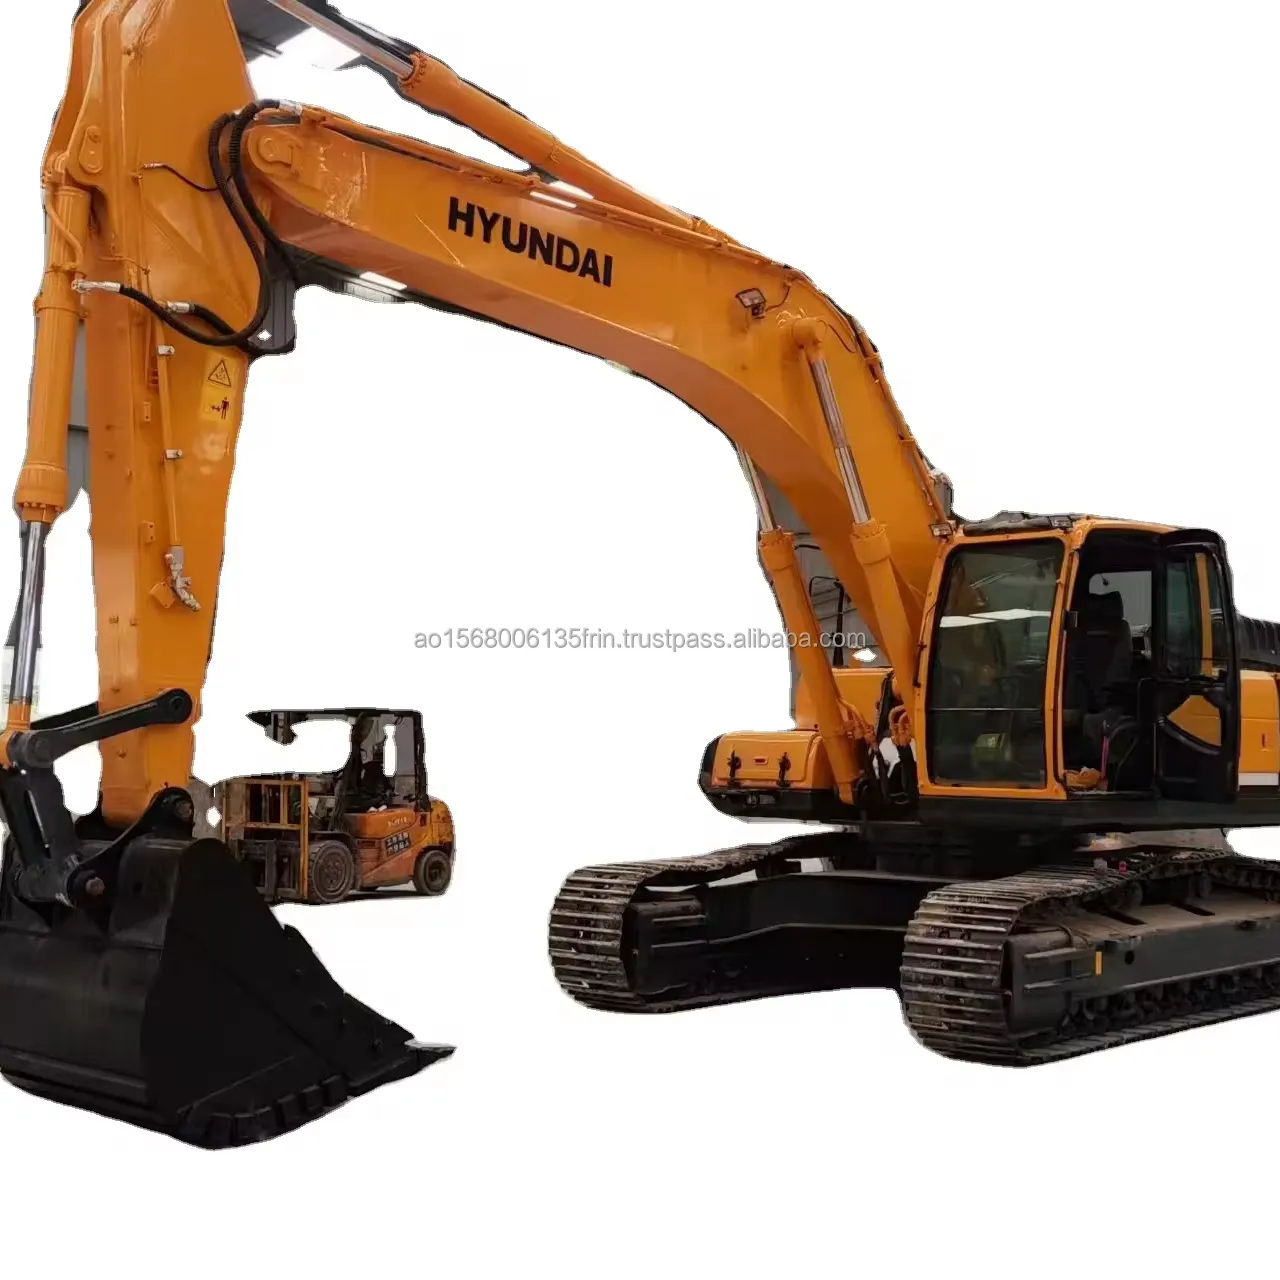 Escavatore coreano originale Hyundai 305 usato Robex Hyundai R305 R305-9T 305LC-9T usato escavatori 30ton pala scavatrice